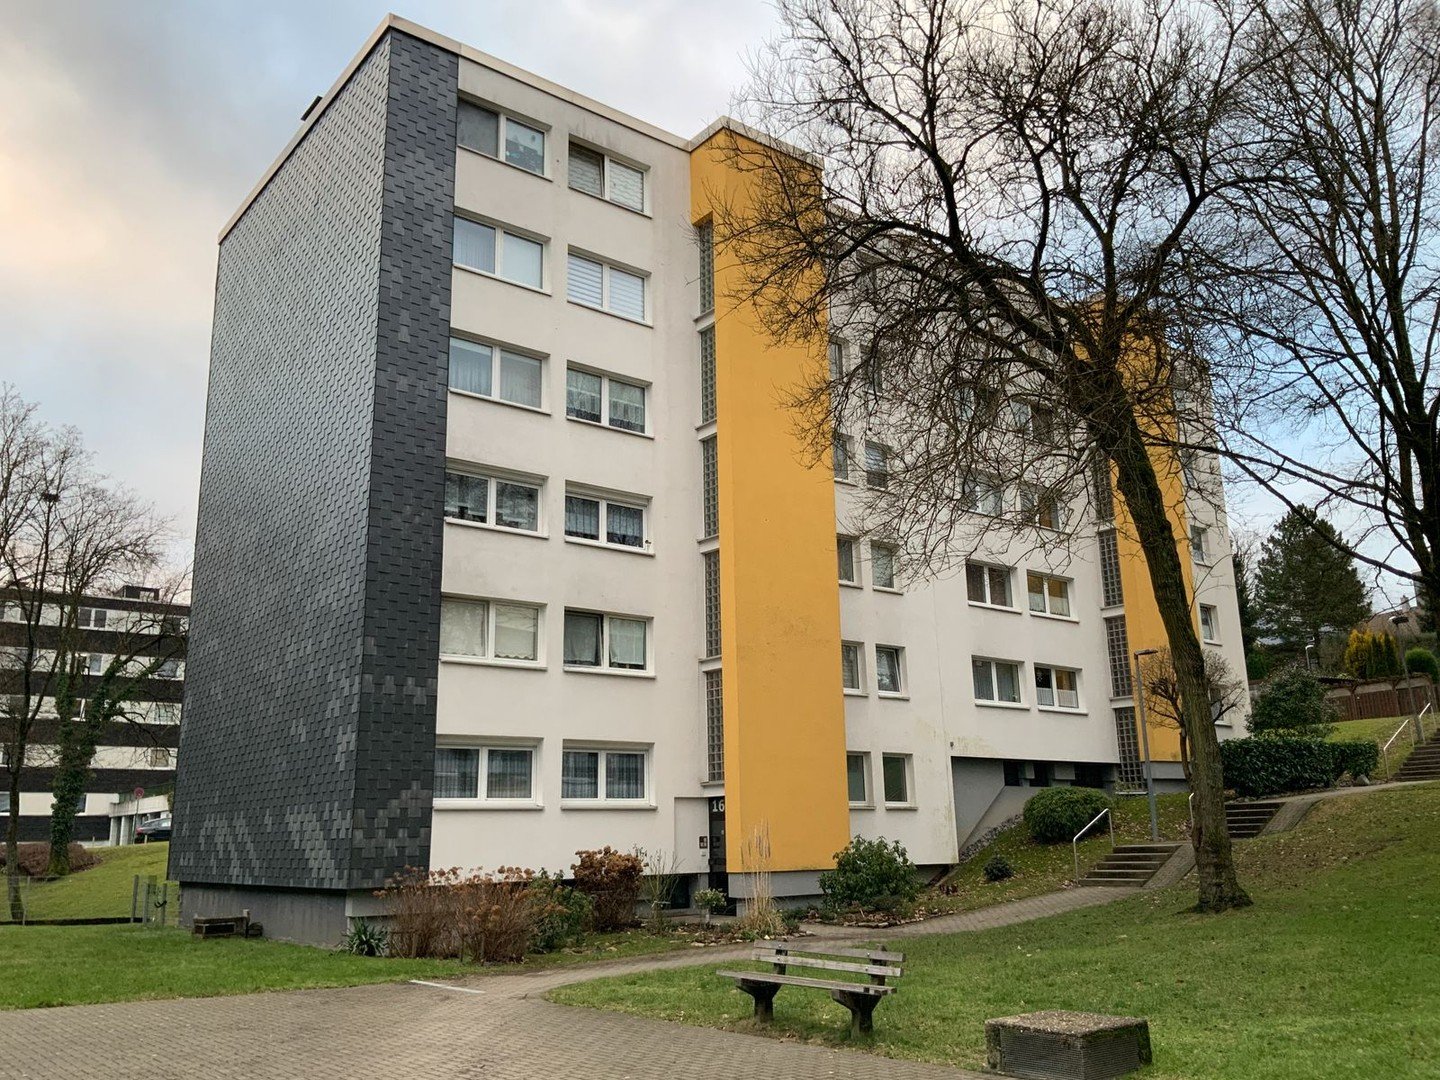 2 Zimmerwohnung mit Balkon und Stellplatz in Wuppertal Oberbarmen zu vermieten